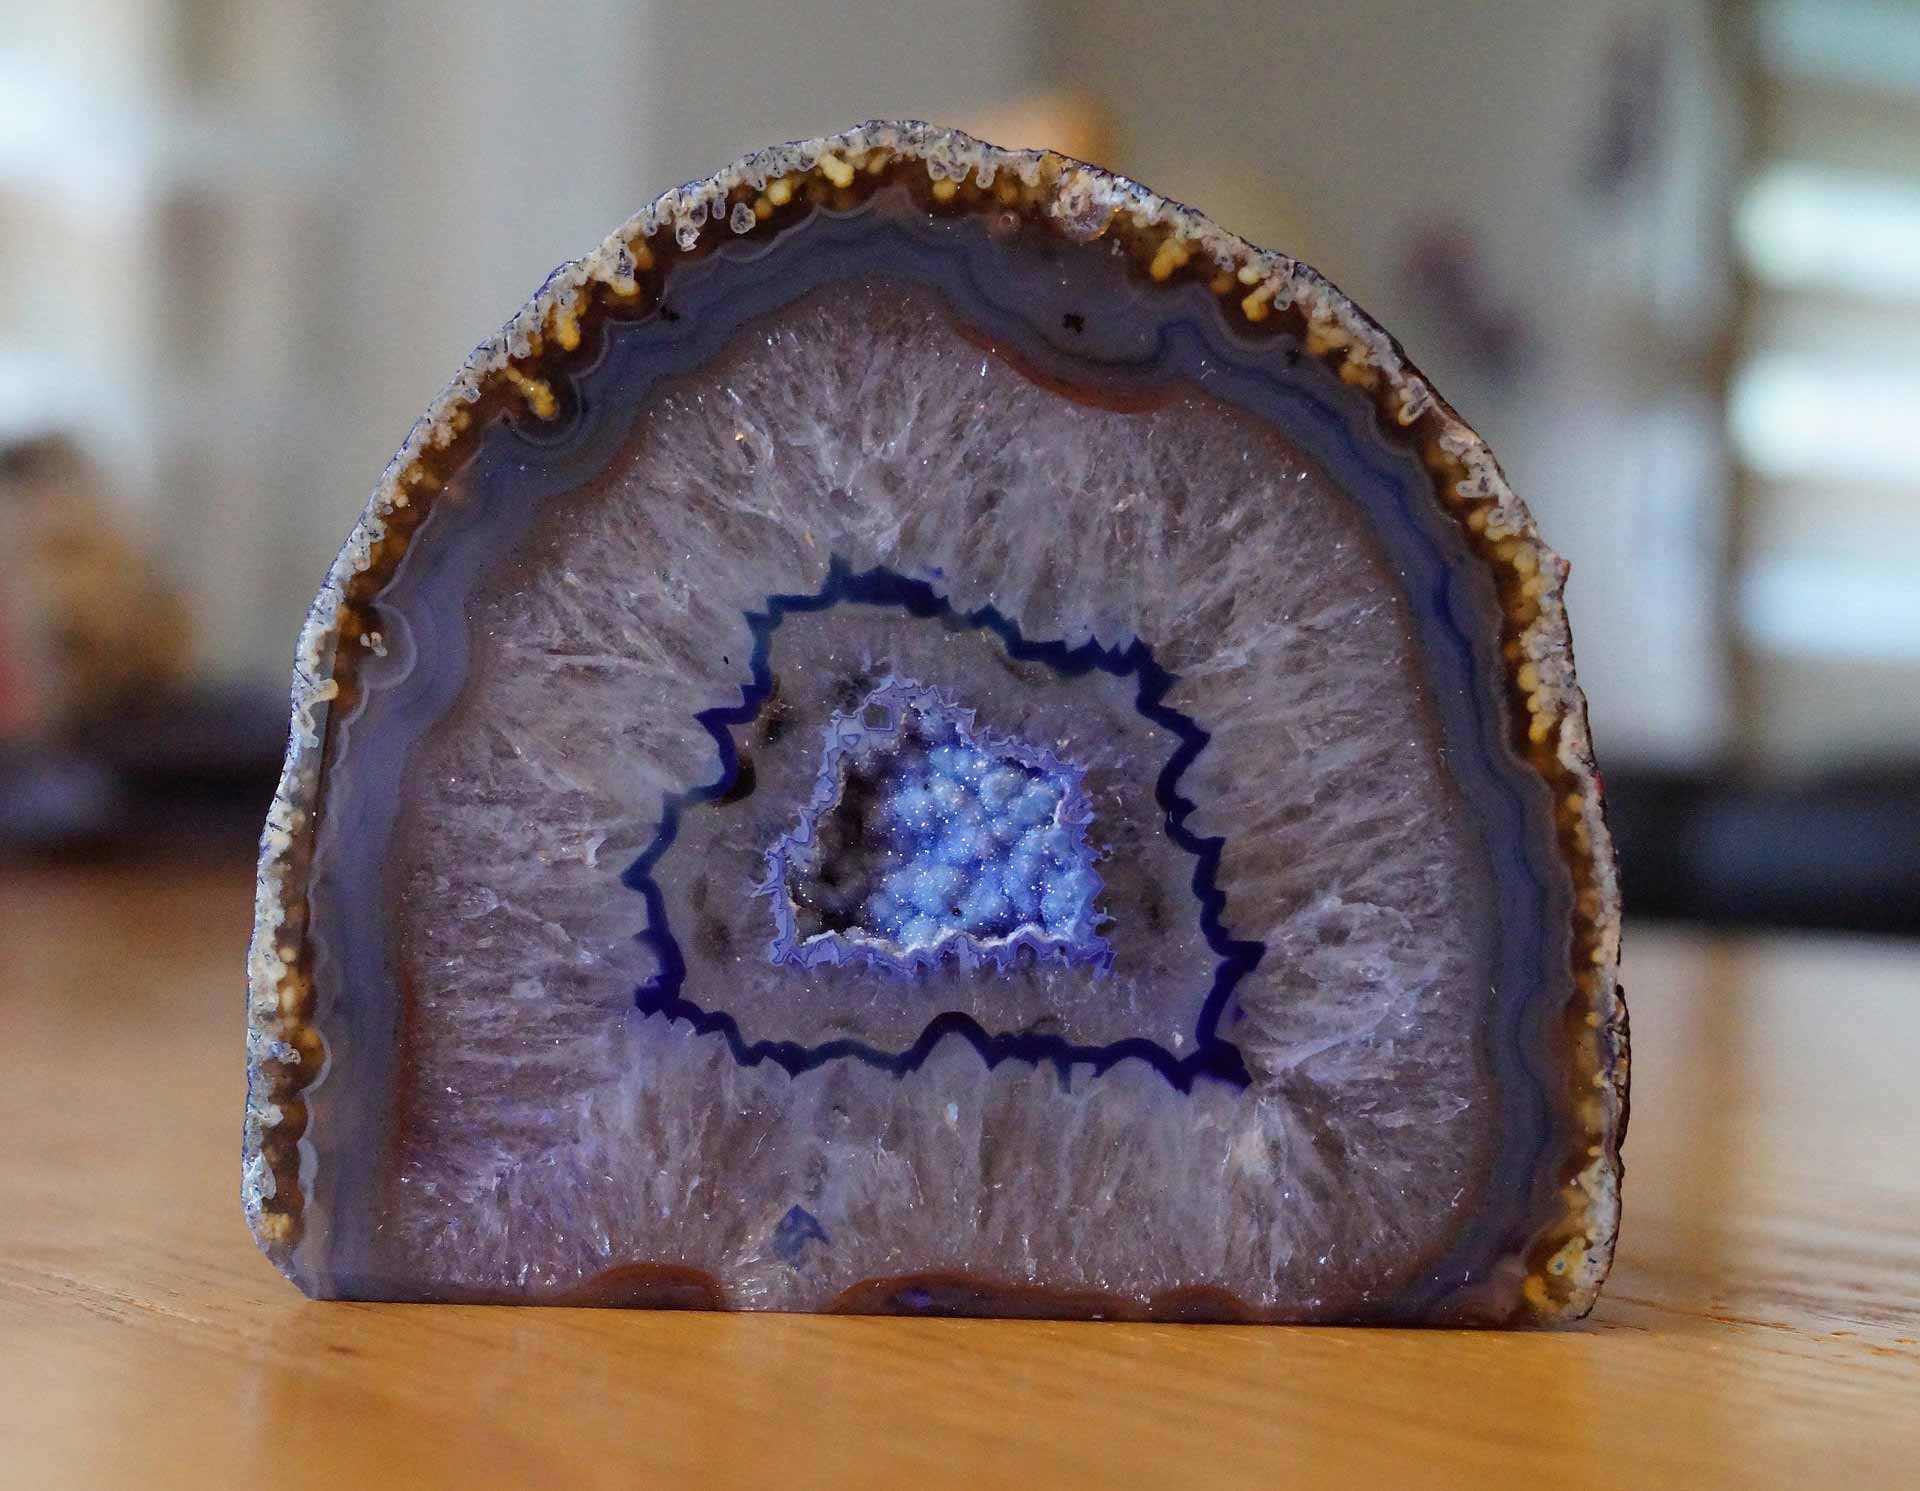 A purple geode